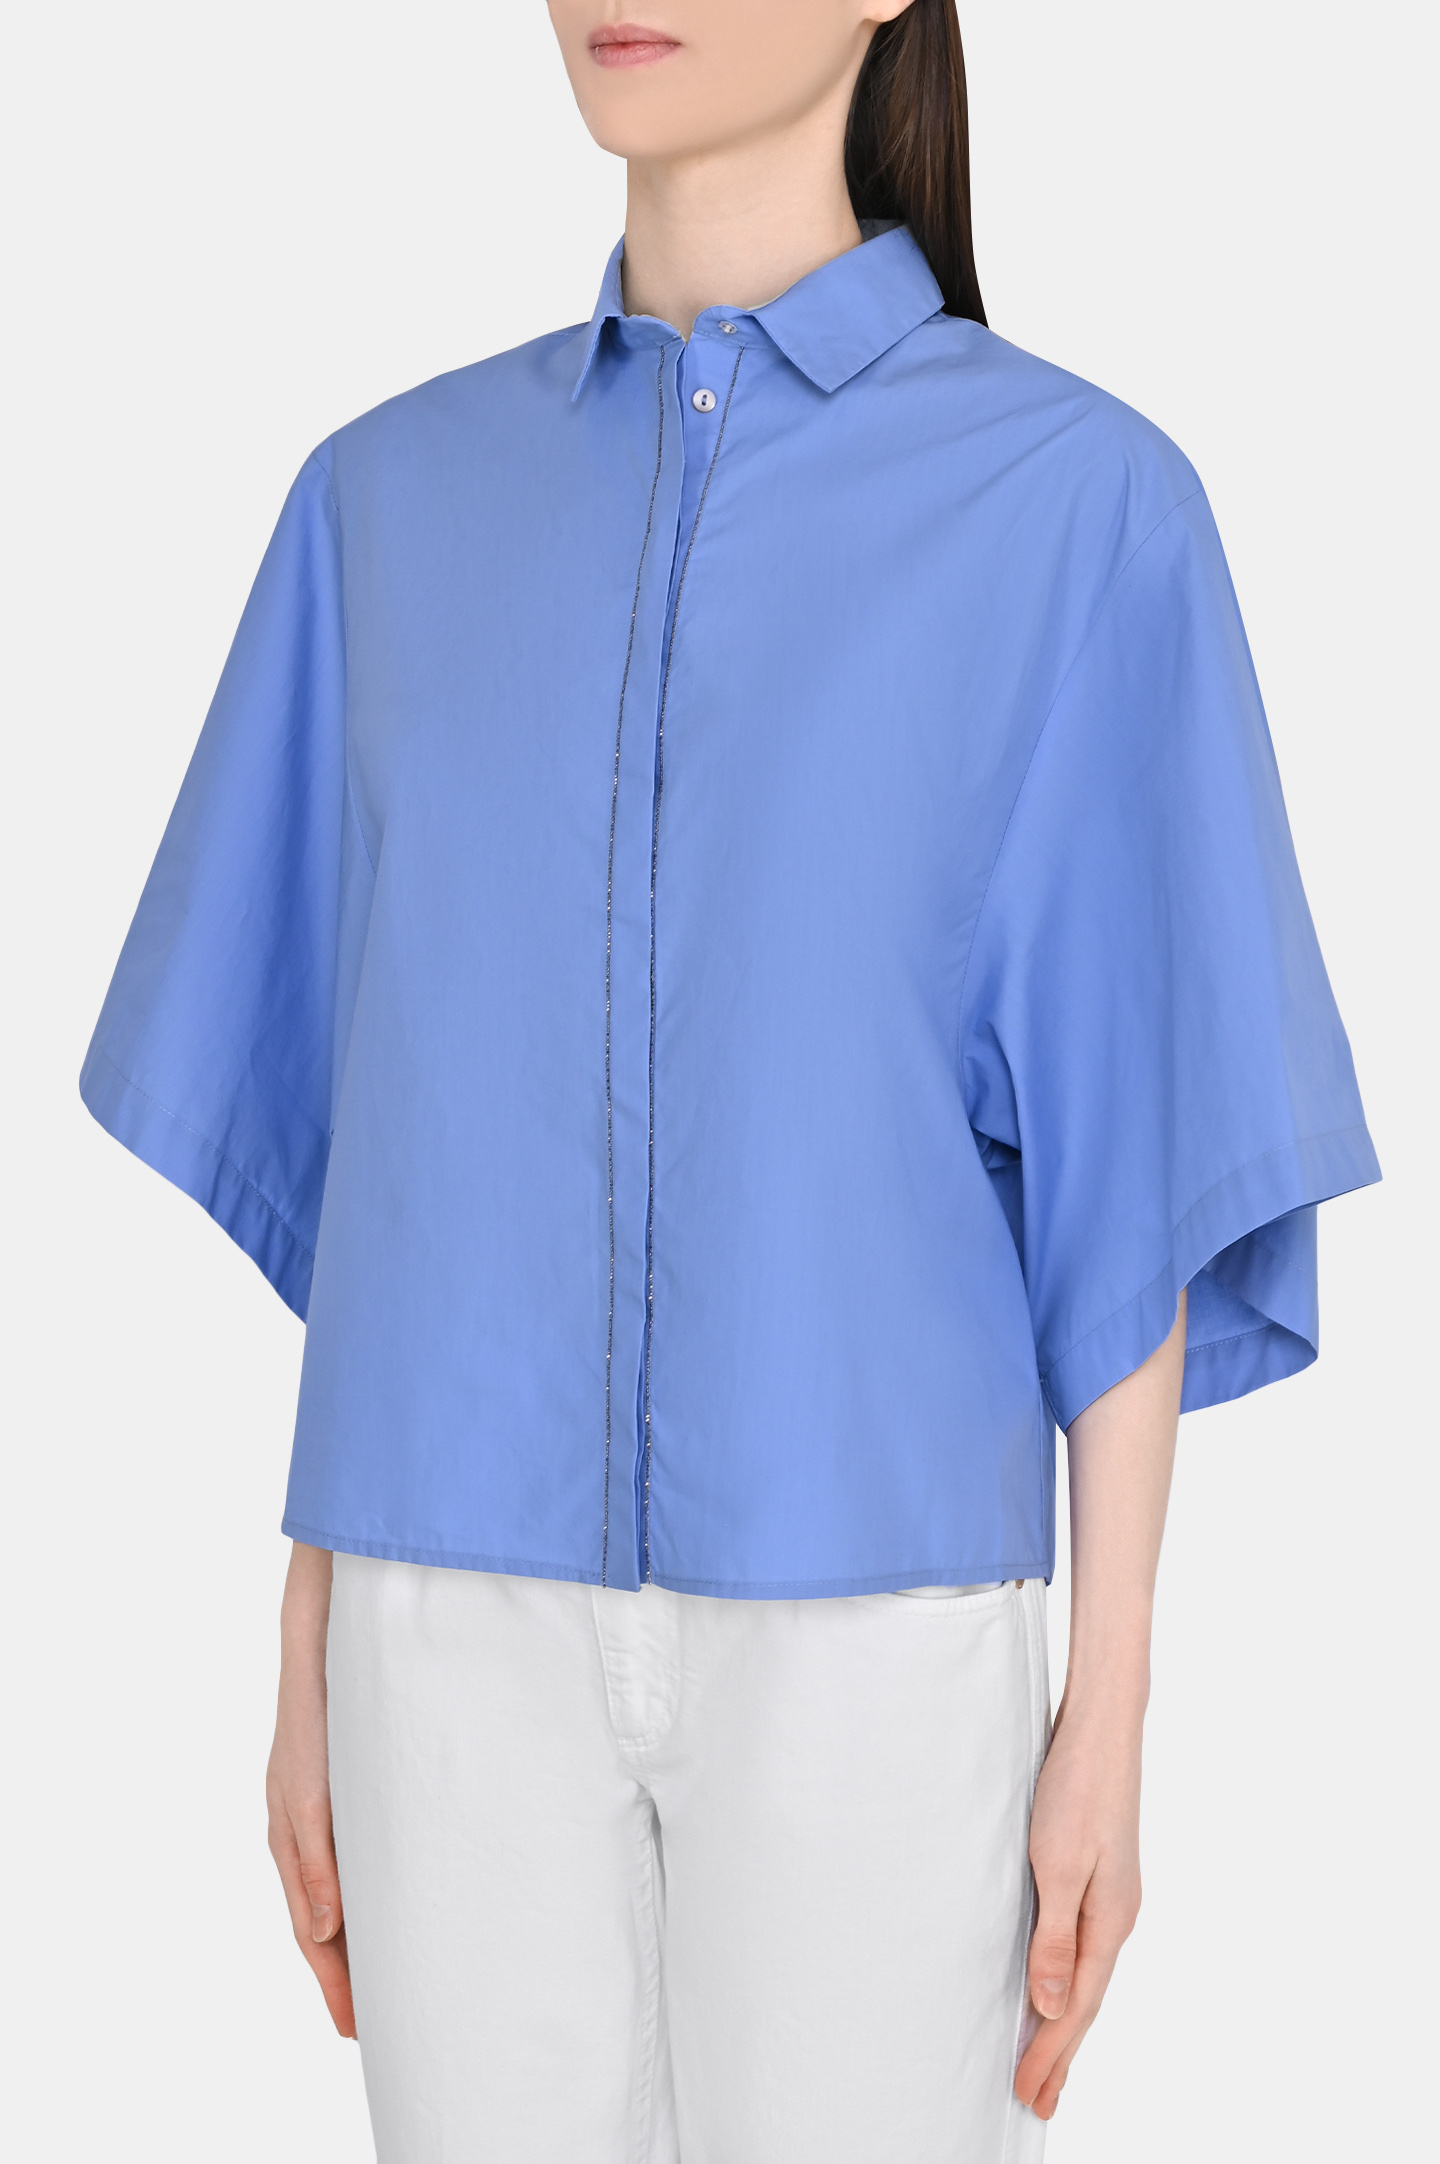 Блуза FABIANA FILIPPI CAD273B646I809, цвет: Голубой, Женский